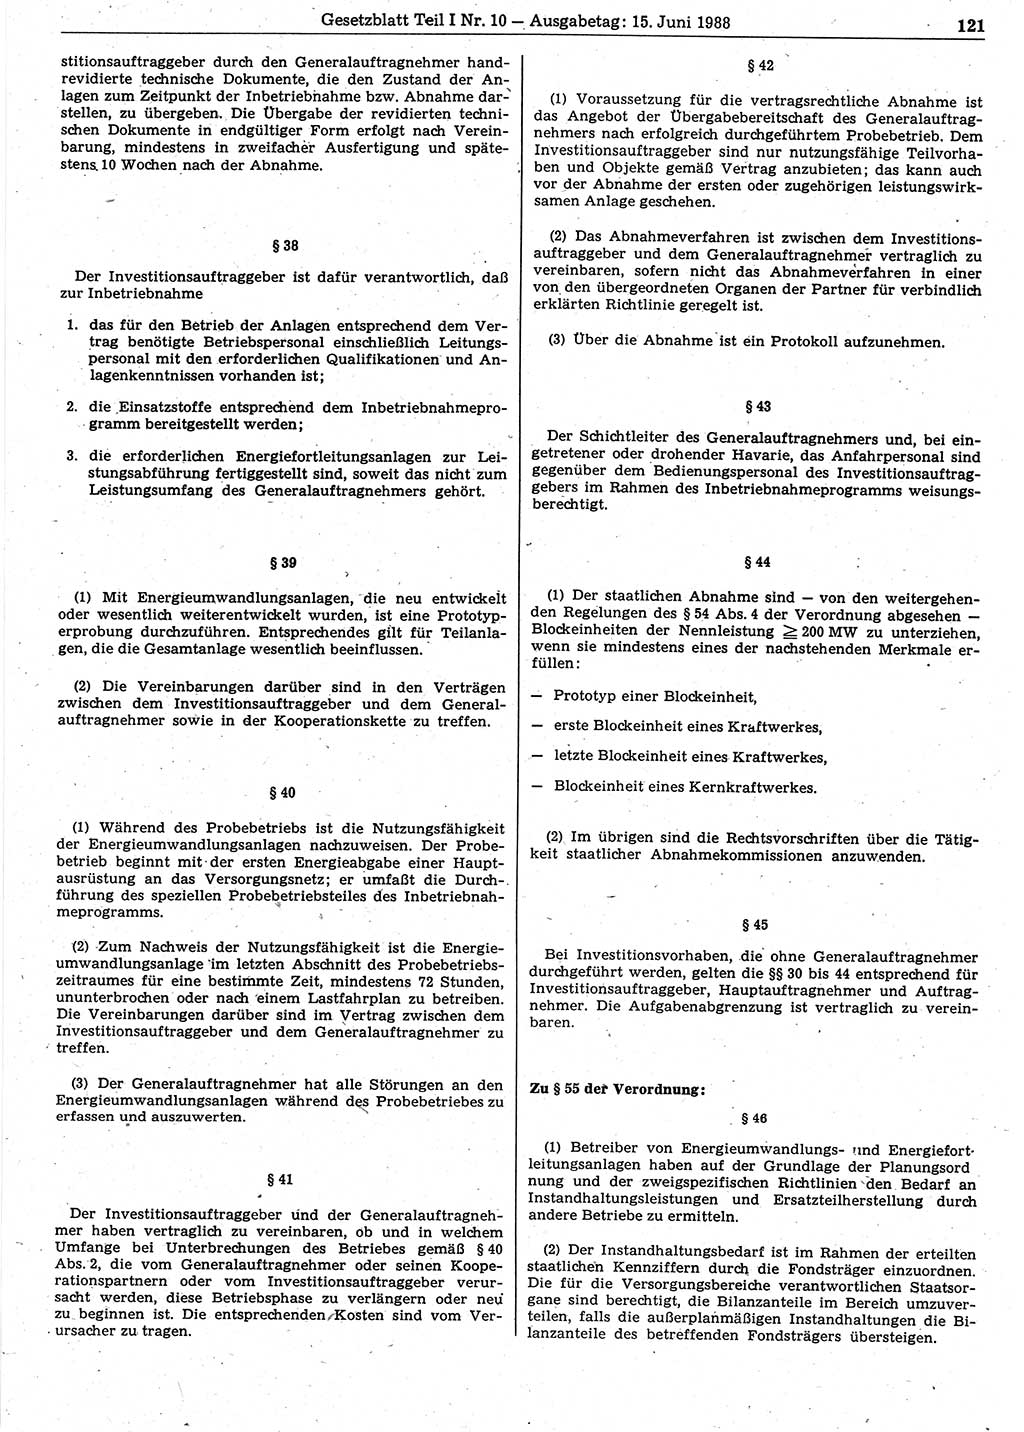 Gesetzblatt (GBl.) der Deutschen Demokratischen Republik (DDR) Teil Ⅰ 1988, Seite 121 (GBl. DDR Ⅰ 1988, S. 121)